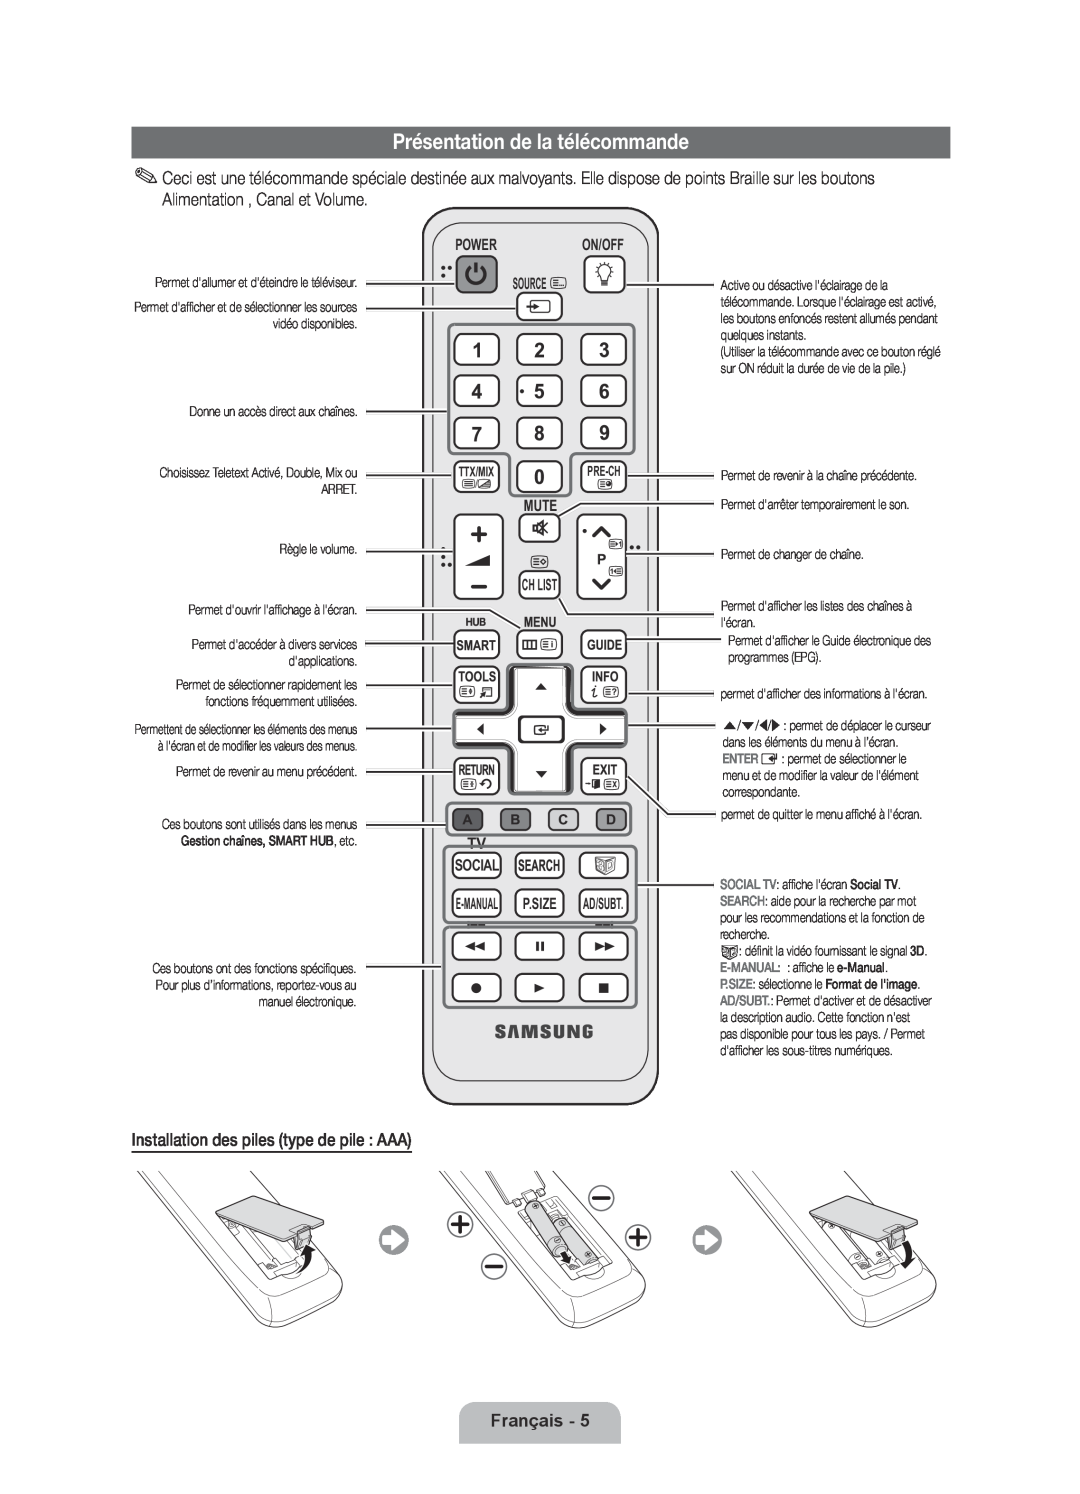 Samsung UE40D6570WSXZF manual Présentation de la télécommande, Français, Power On/Off Source, Mute Ch List Tv Social 